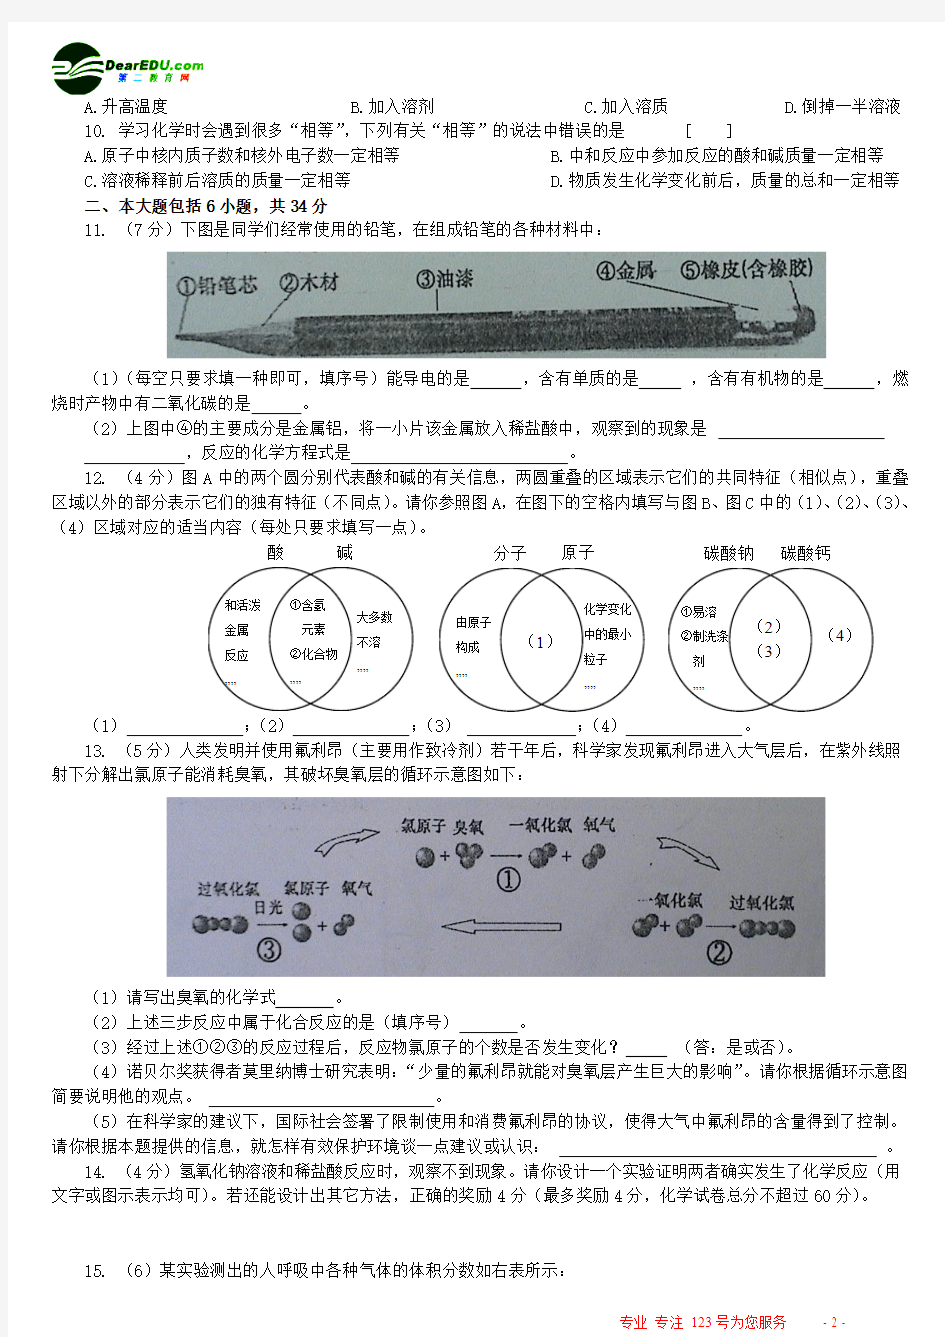 2005年安徽省中考试卷(开卷)